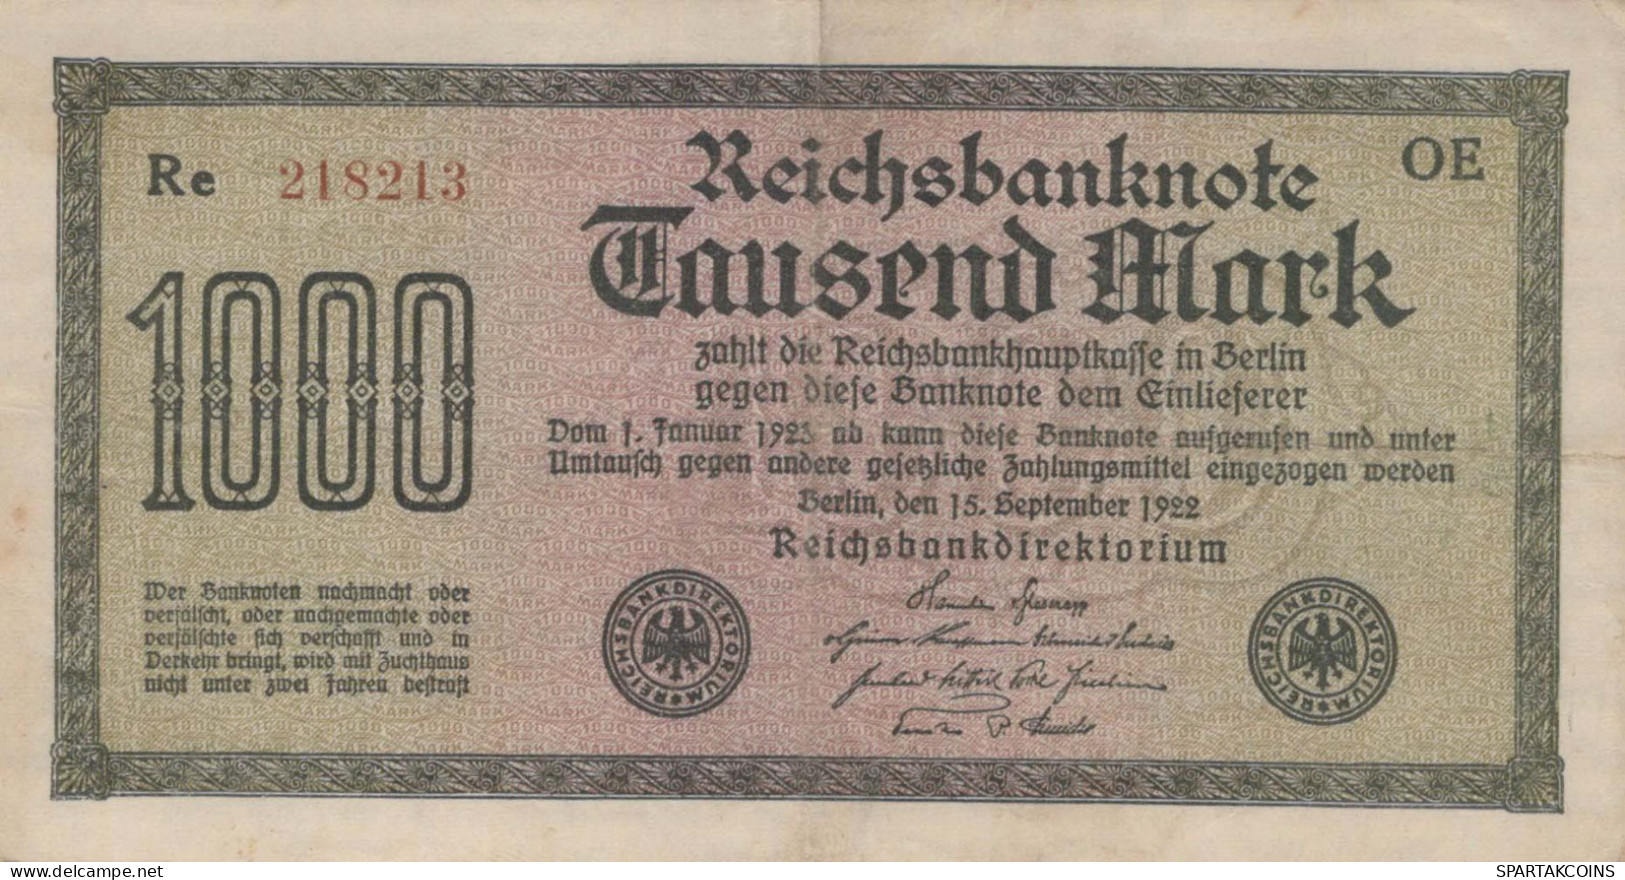 1000 MARK 1922 Stadt BERLIN DEUTSCHLAND Papiergeld Banknote #PL388 - [11] Emissions Locales